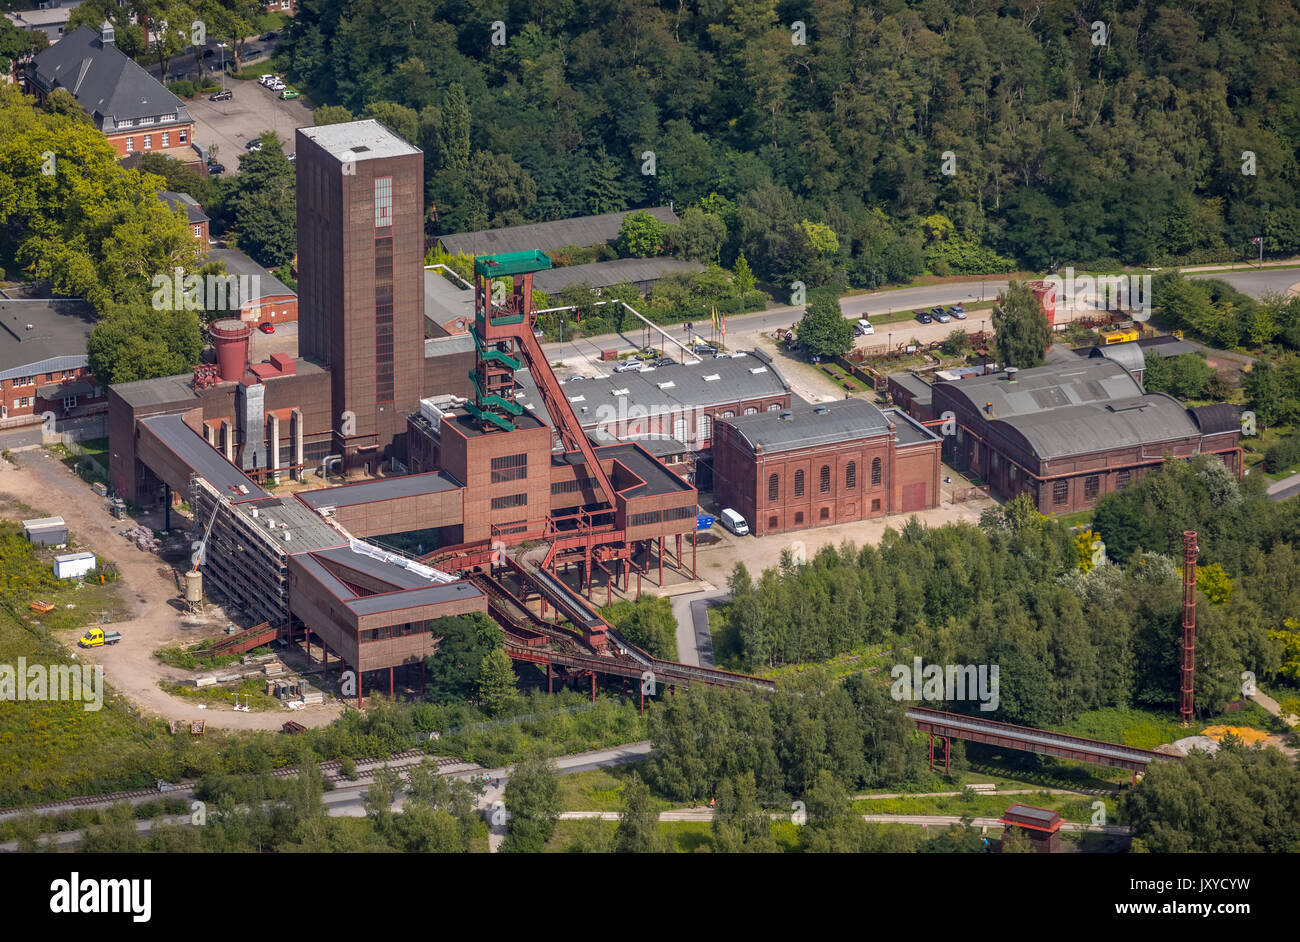 PACT Zollverein, arte albero Zollverein Thomas Rother, area Patrimonio Mondiale Zollverein Essen, Essen, la zona della Ruhr, Renania settentrionale-Vestfalia, Germania, Essen, e Foto Stock